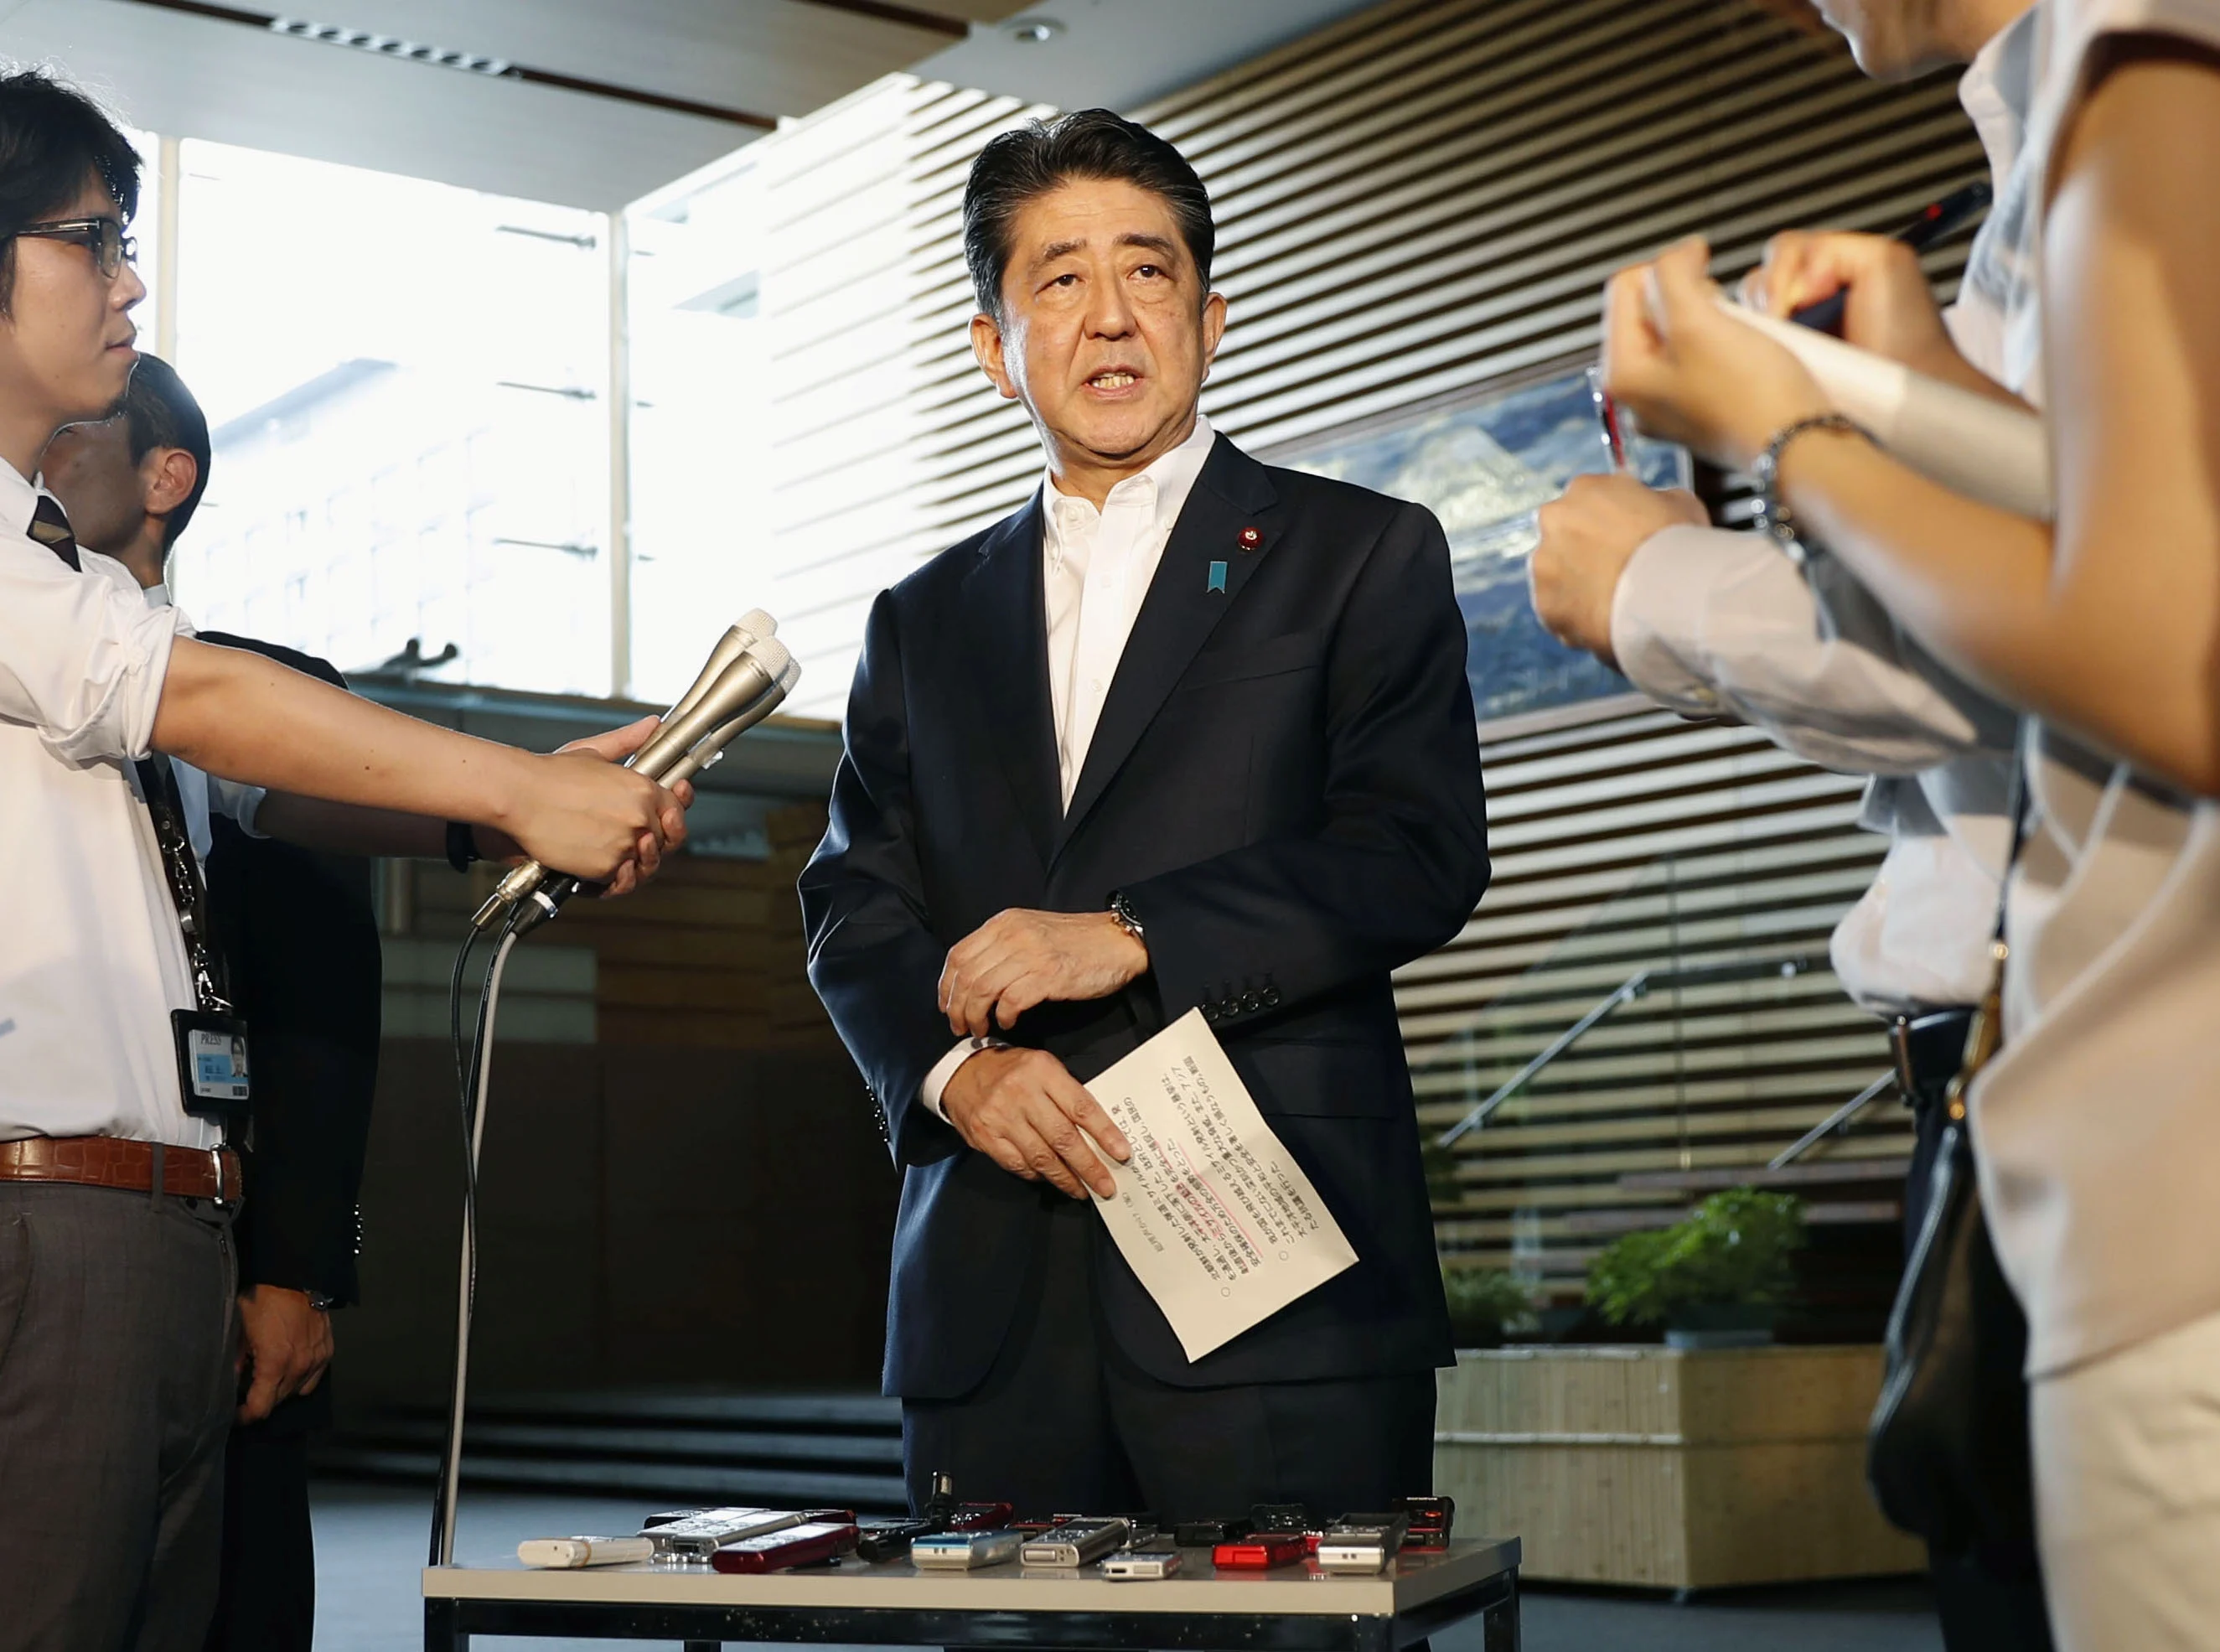 ראש ממשלת יפן, שינזו אבה, בתדרוך לעיתונאים לאחר שיגור הטיל הצפון קוריאני